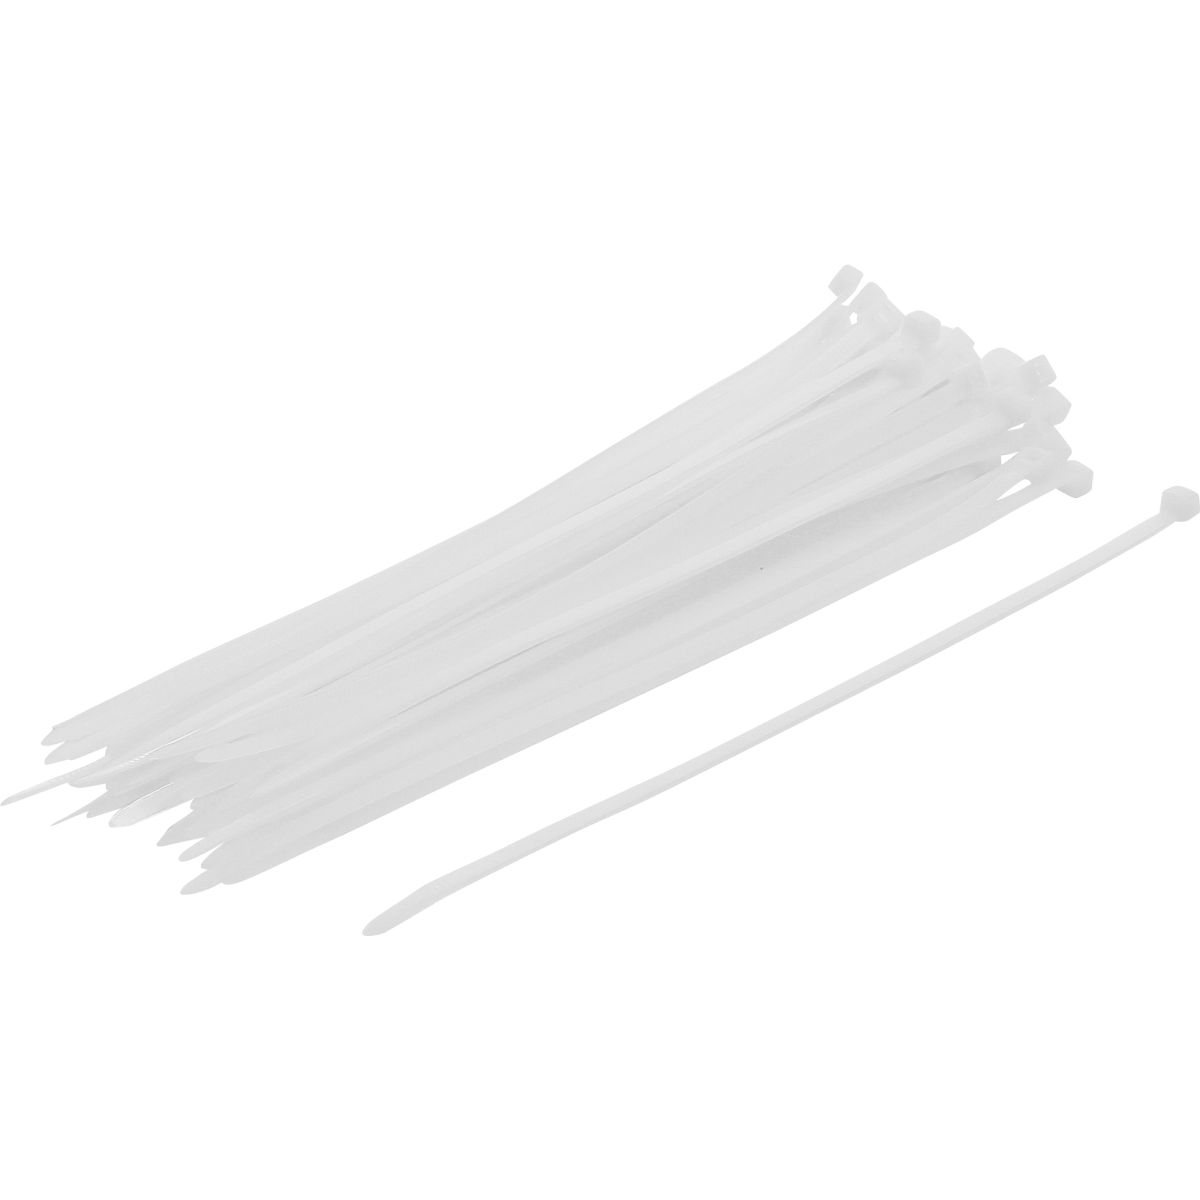 Cable Tie Assortment | white | 4.8 x 250 mm | 50 pcs.